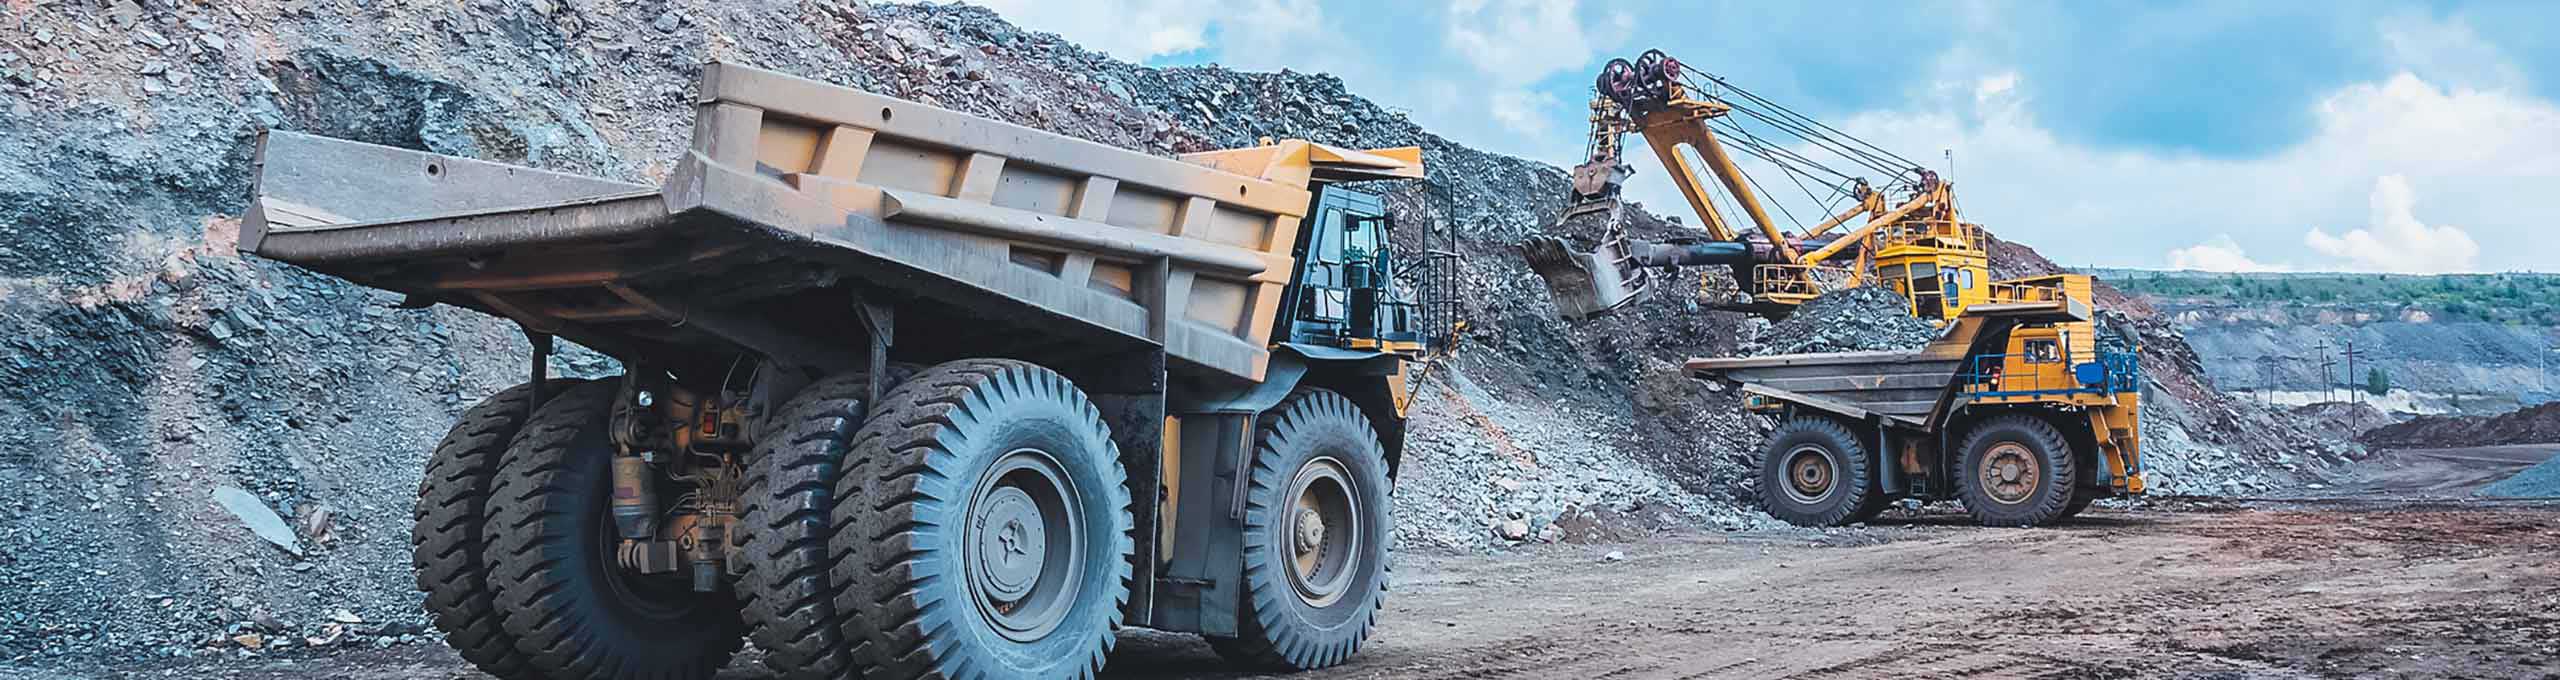 excavadora amarilla grande extrayendo mineral de hierro en una mina a cielo abierto y cargando un camión pesado